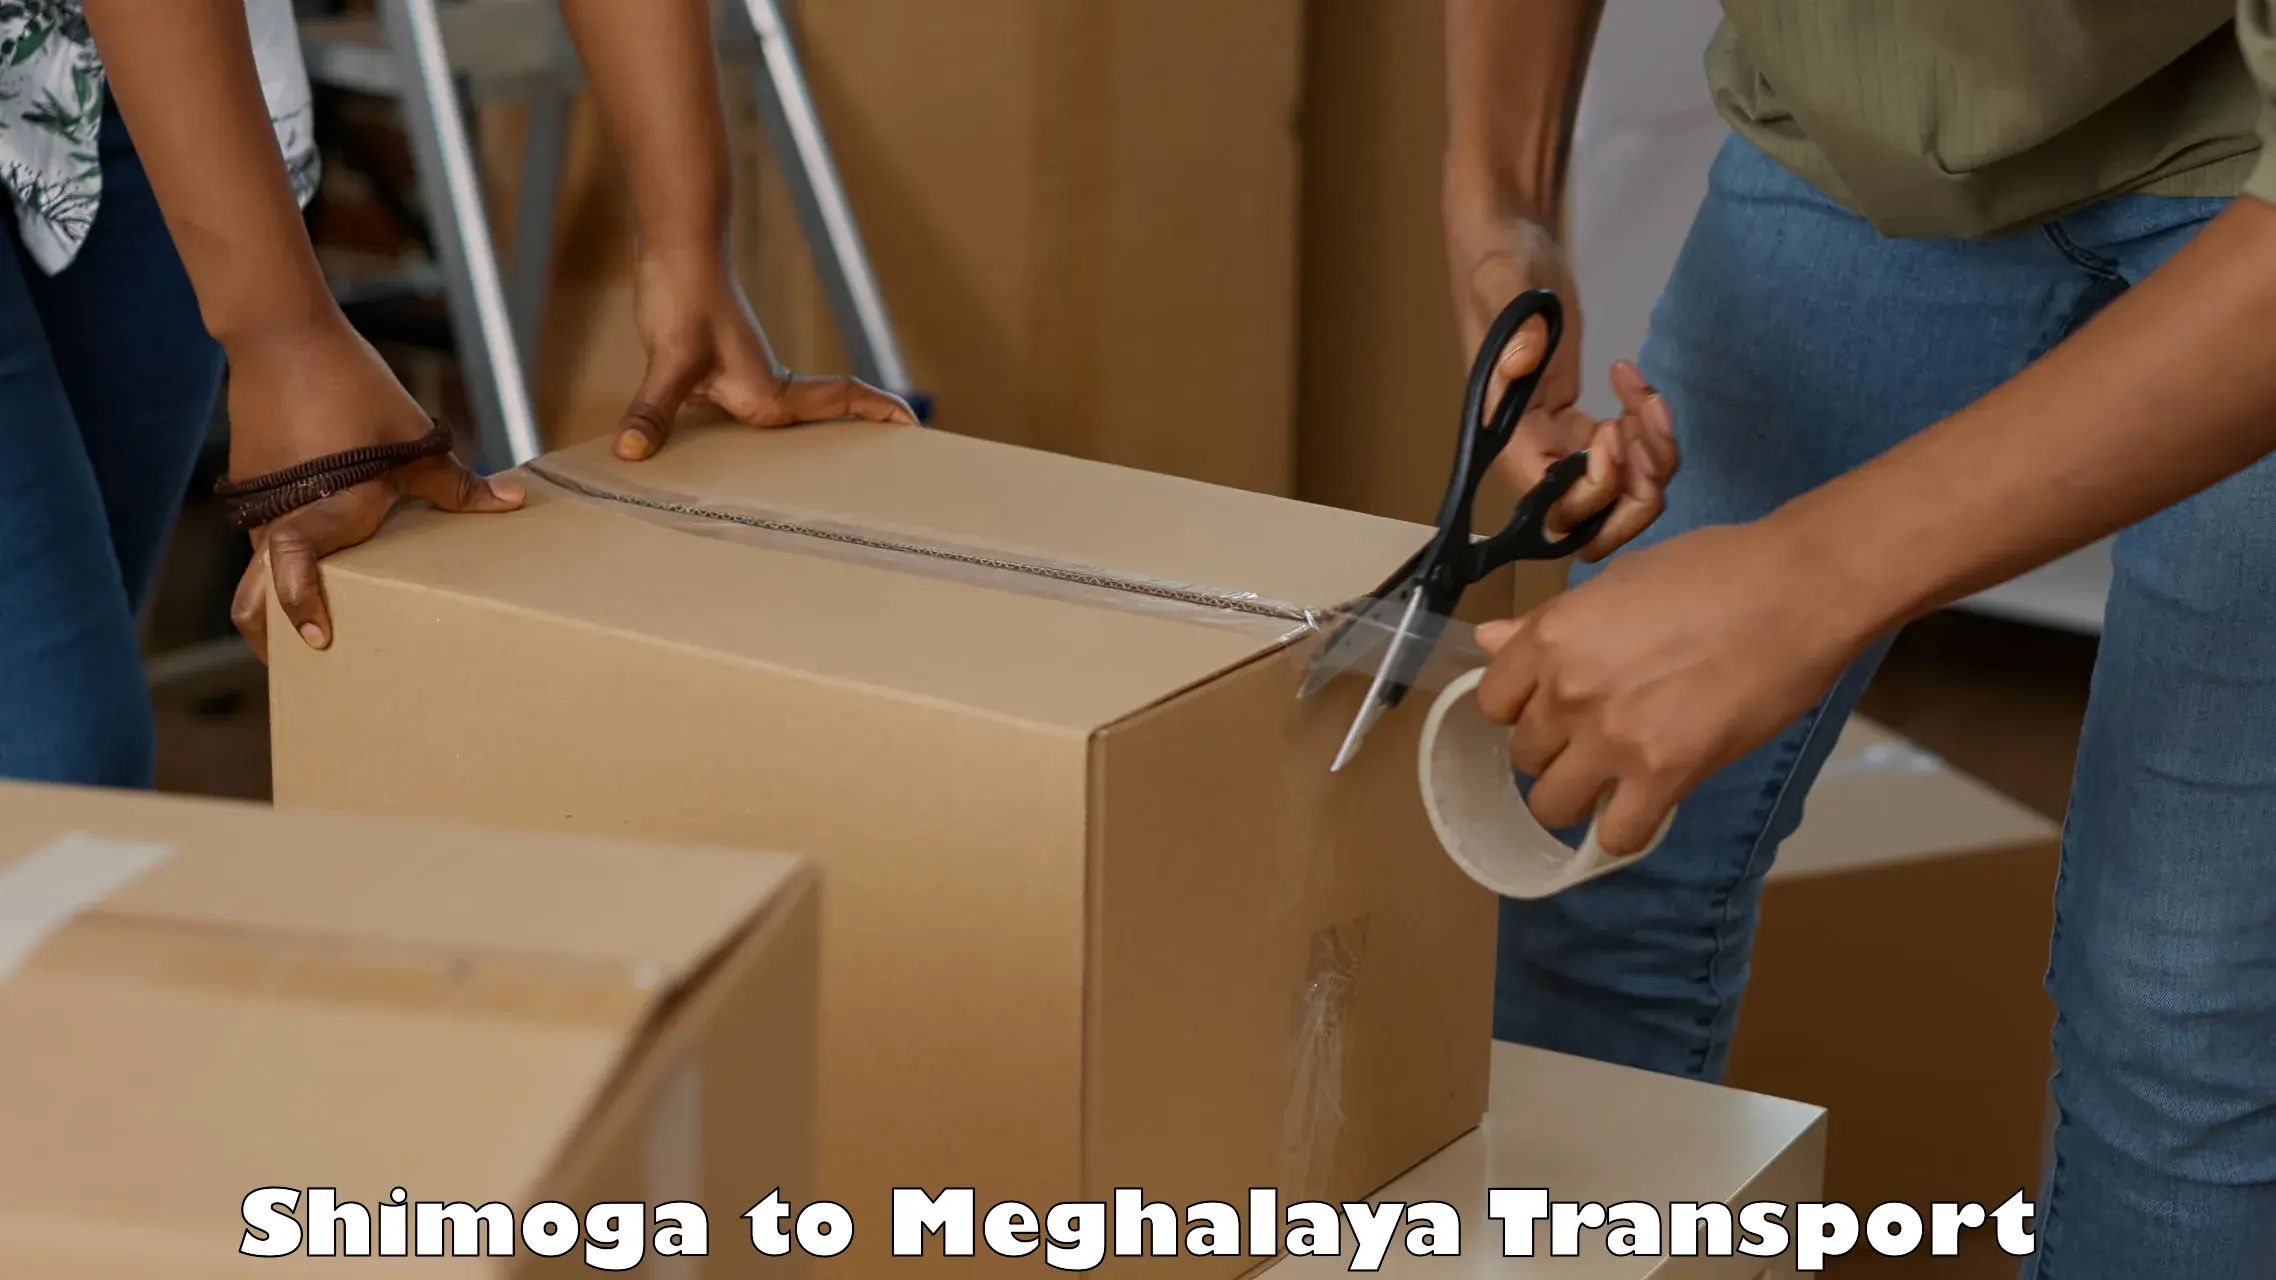 Nearby transport service Shimoga to NIT Meghalaya